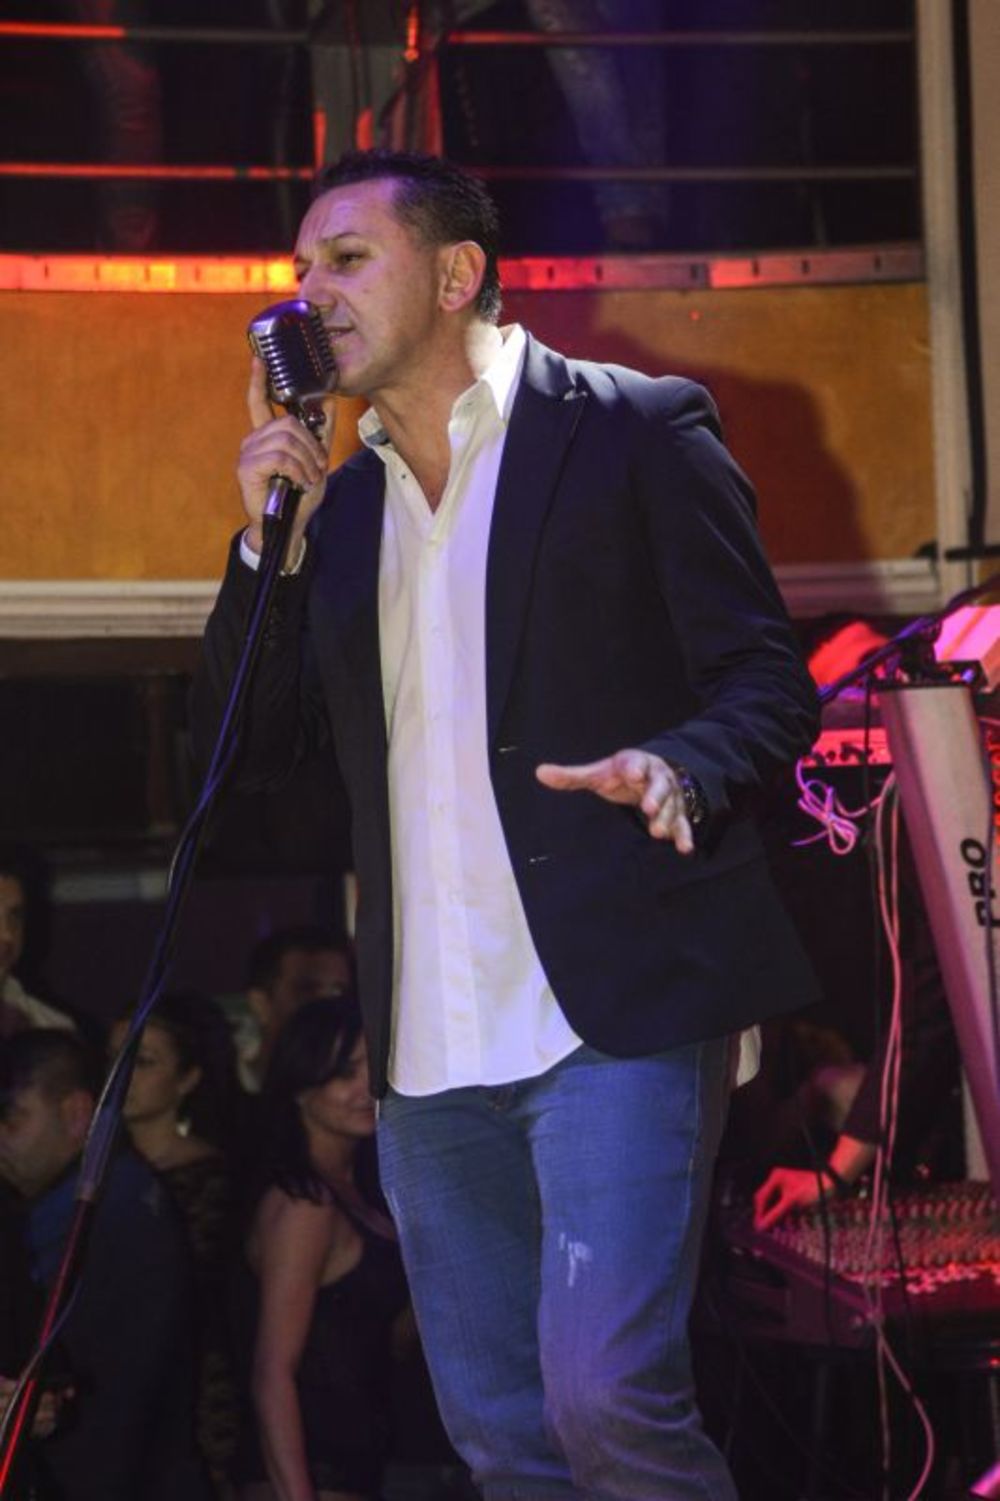 Najpopularniji crnogorski pevač, Šako Polumenta nastupio je prvi put u 2013 godini u Beogradu, i to u najvećem prestoničkom klubu Teatro. Ogromna gužva kako u klubu tako i ispred kluba bila je dovoljan pokazatelj koliko je ovaj pevač popularan i tražen. Šako s